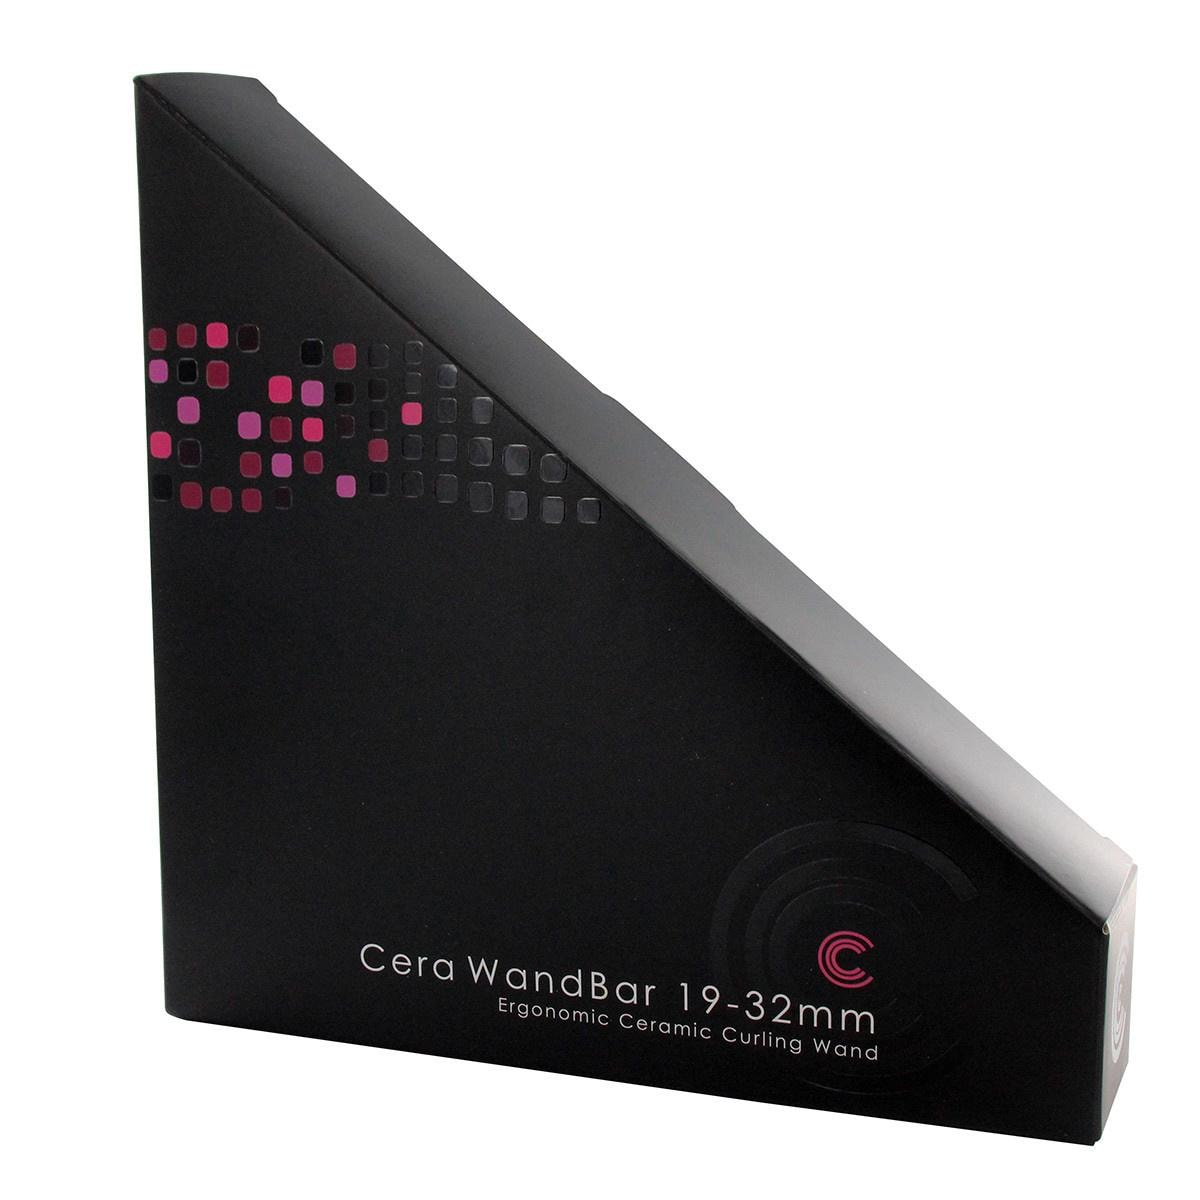 Cera WandBar Curling Iron 19-32mm (3 av 7)